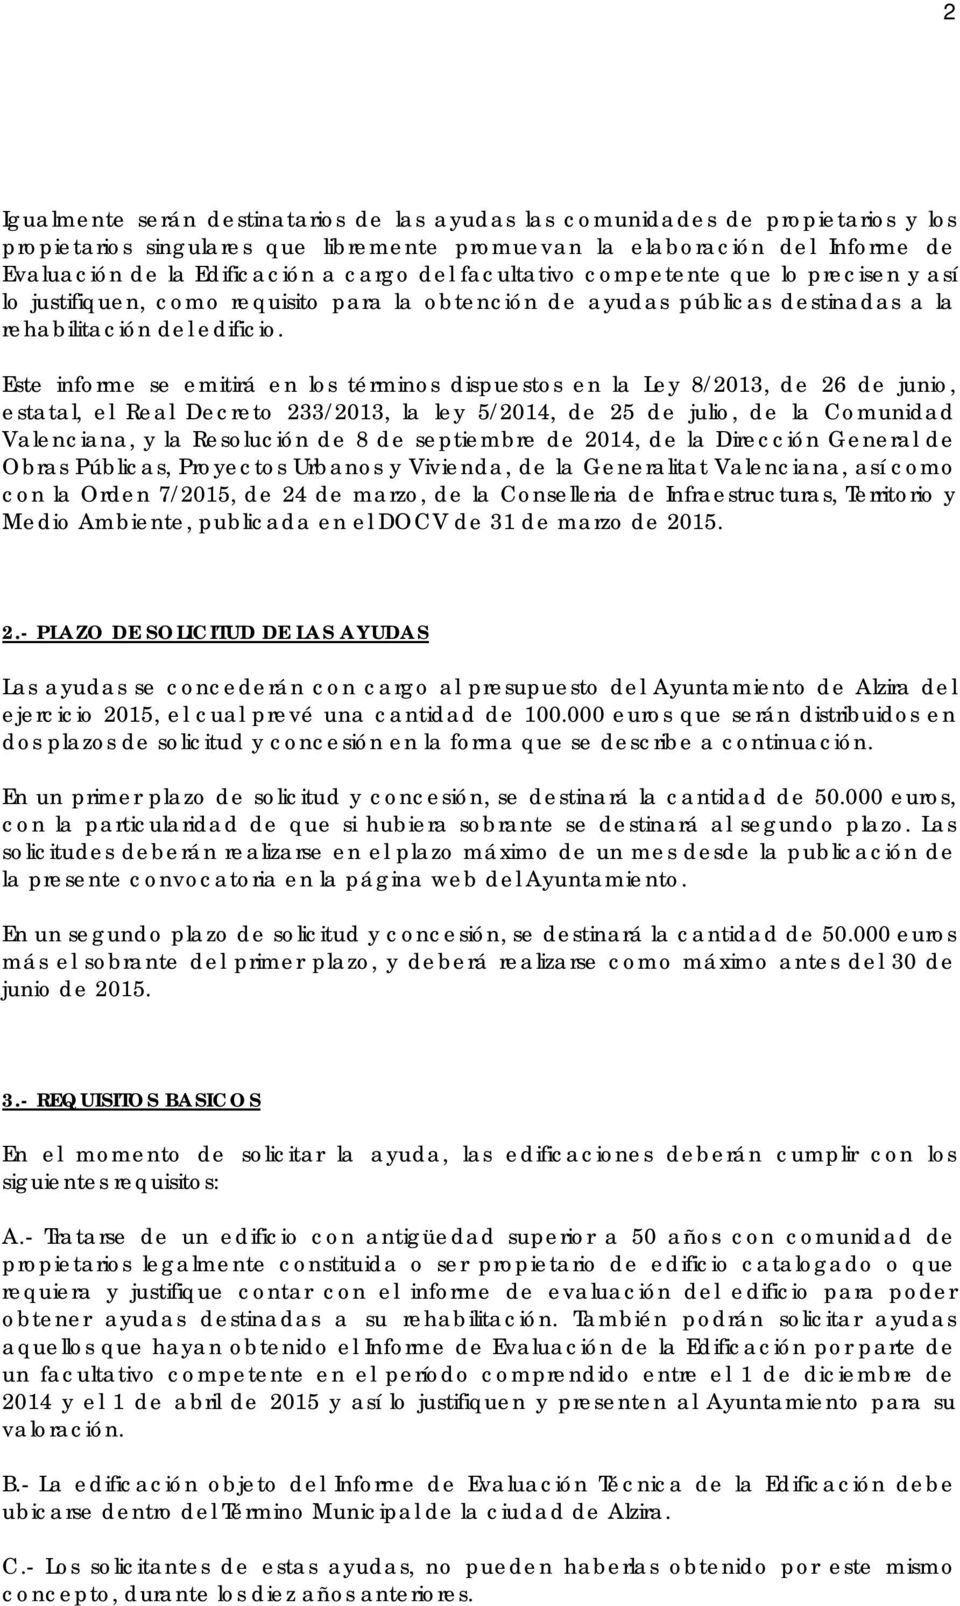 Este informe se emitirá en los términos dispuestos en la Ley 8/2013, de 26 de junio, estatal, el Real Decreto 233/2013, la ley 5/2014, de 25 de julio, de la Comunidad Valenciana, y la Resolución de 8